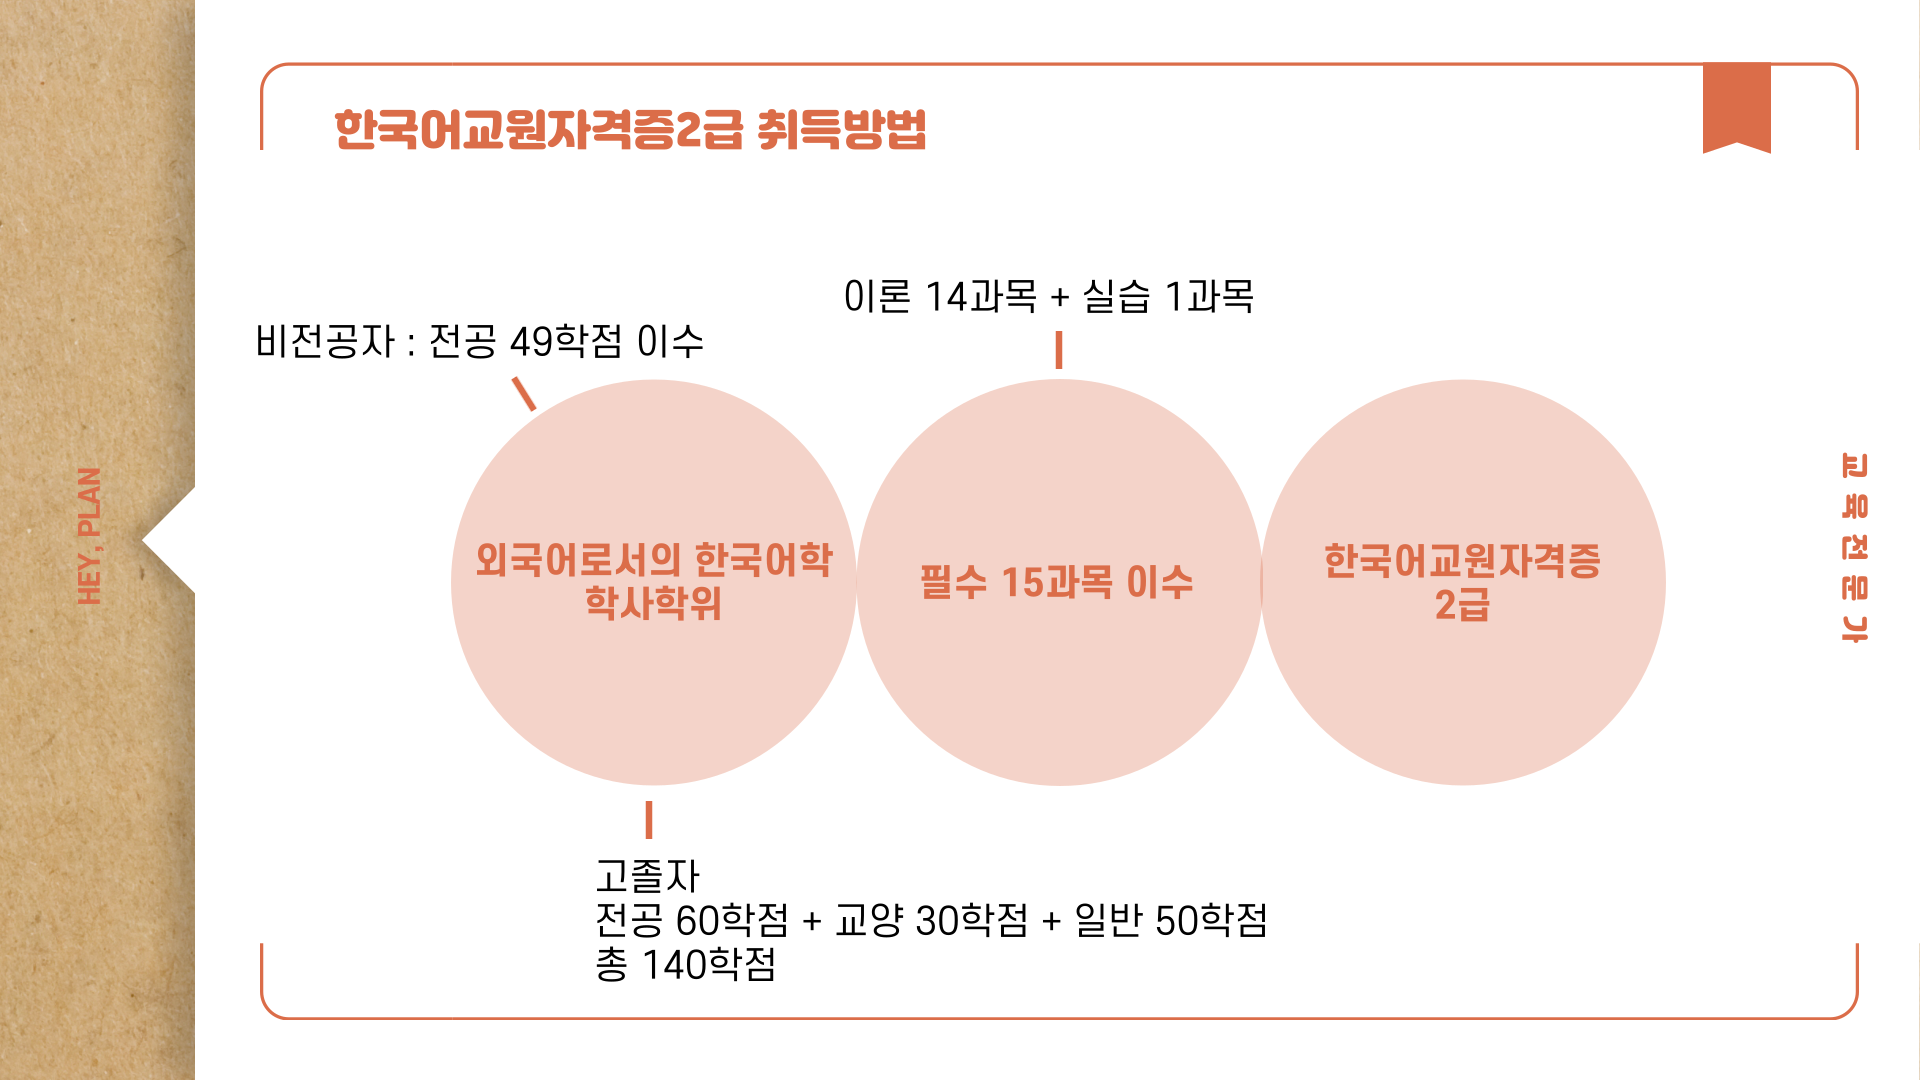 한국어교원자격증2급 취득방법
